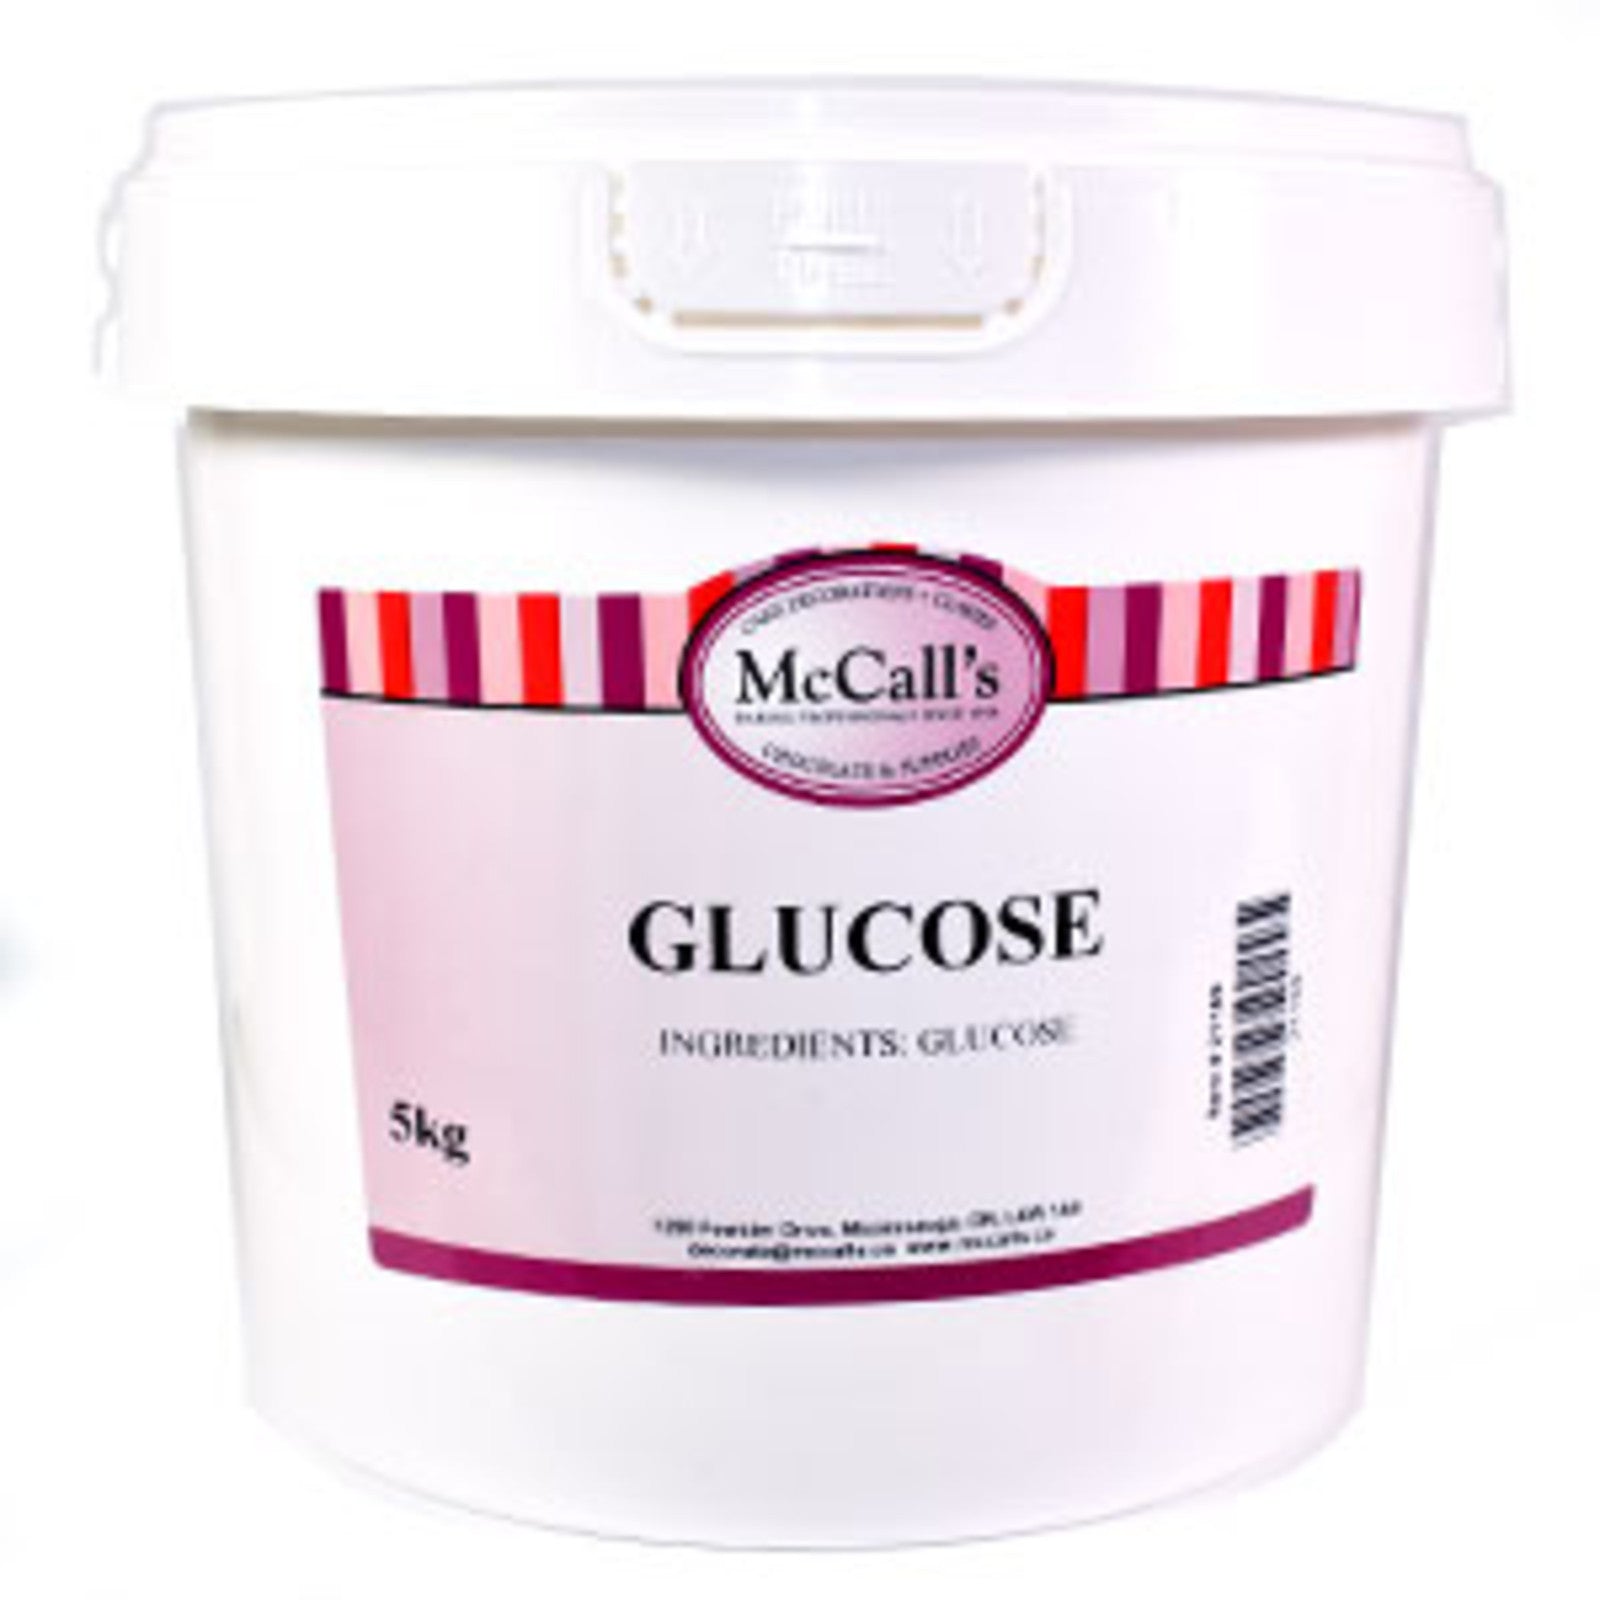 McCall's - Glucose - 5 kg